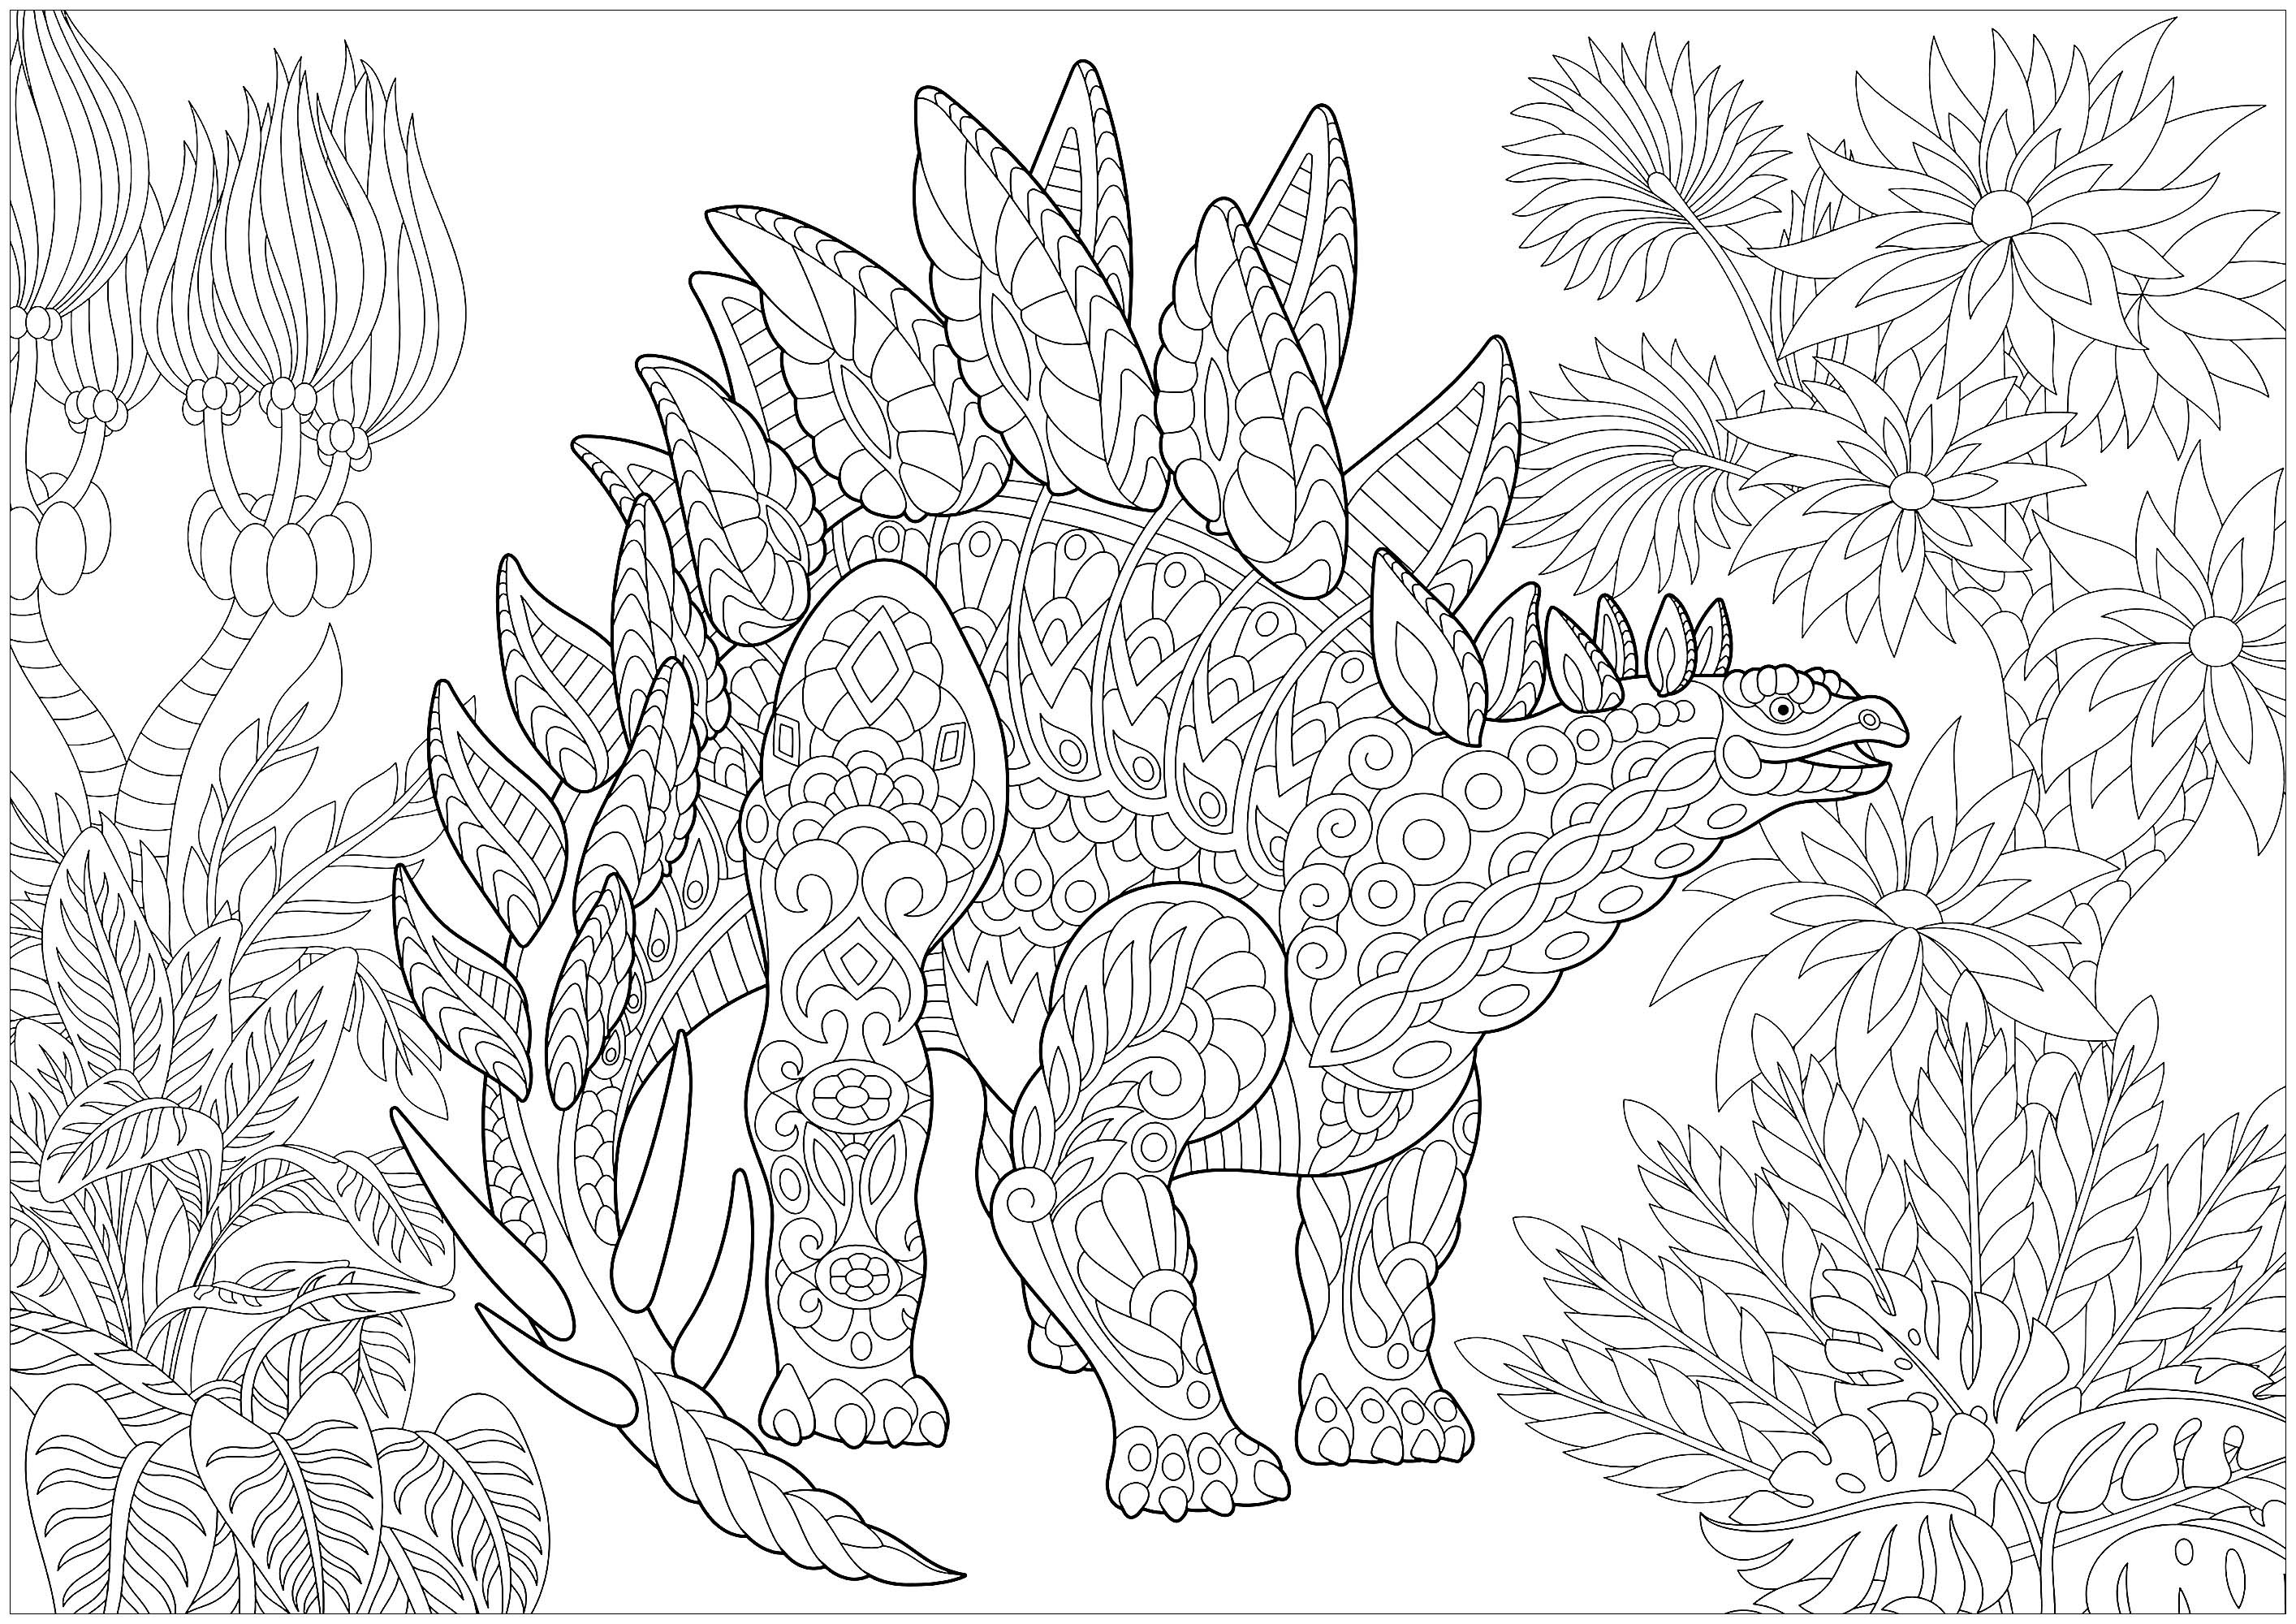 Desenhos simples grátis para colorir de Dinossauros, Artista : Sybirko   Fonte : 123rf